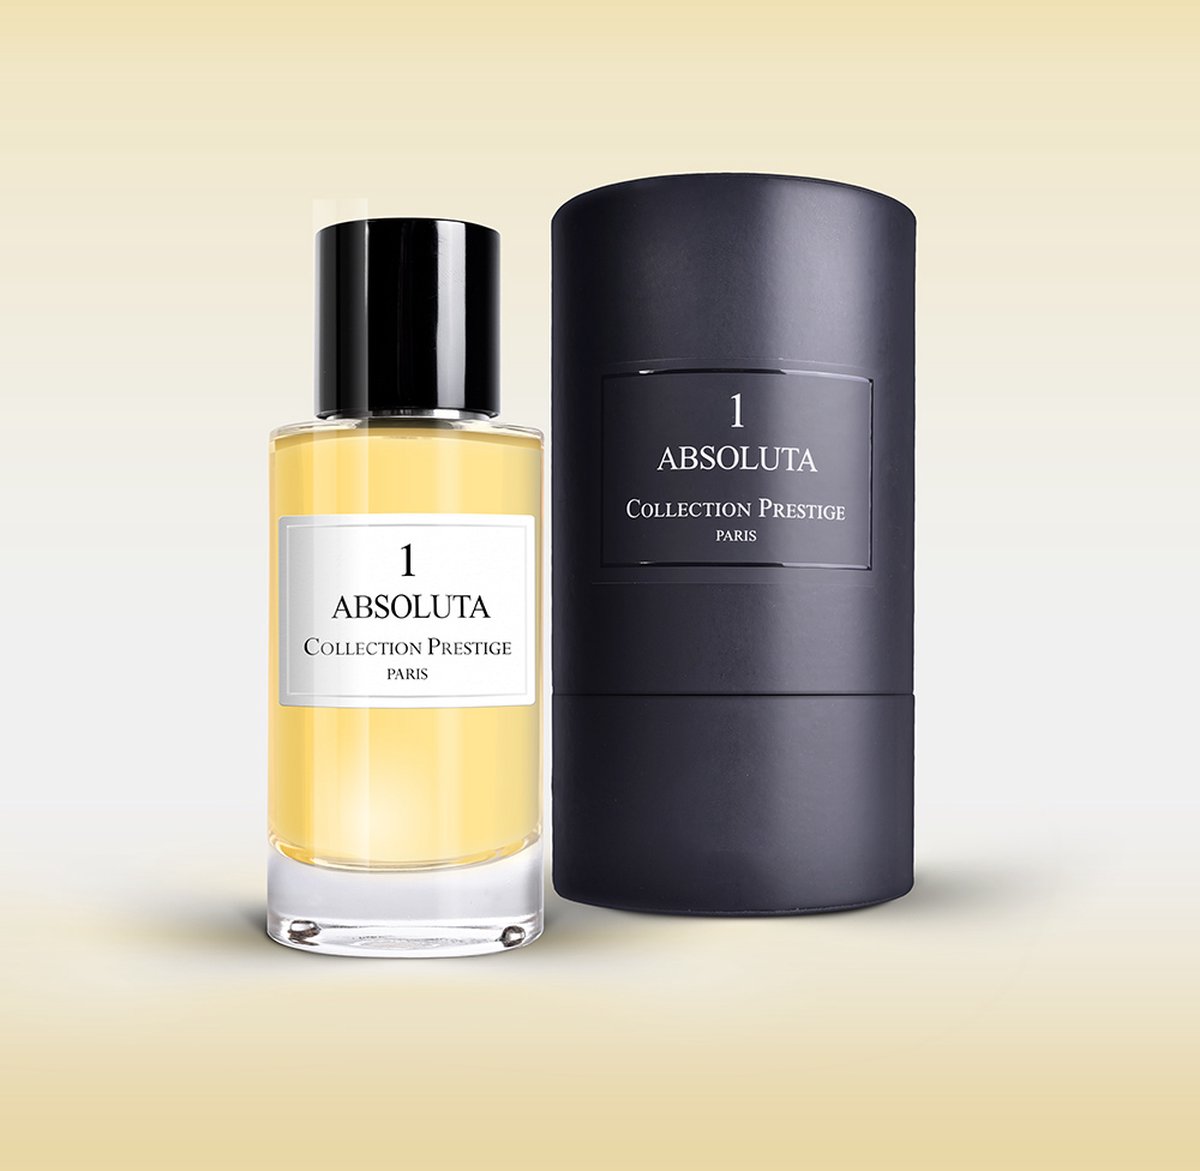 Collection prestige paris - NR 1 Absoluta Bois - 50ML parfum - Unisex